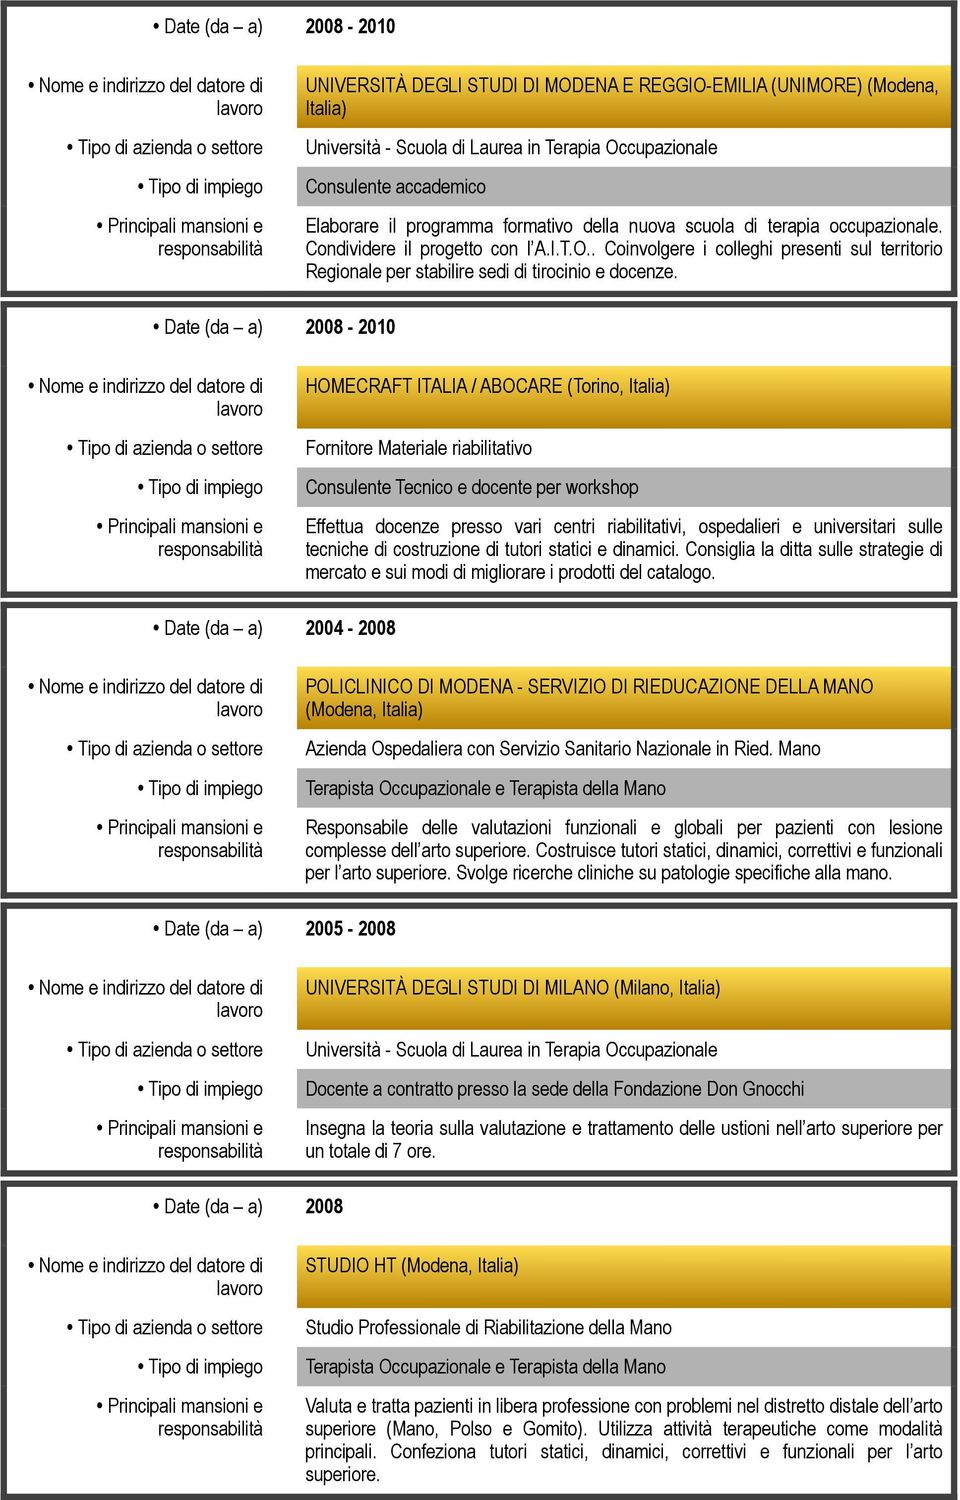 Date (da a) 2008-2010 HOMECRAFT ITALIA / ABOCARE (Torino, Italia) Fornitore Materiale riabilitativo Consulente Tecnico e docente per workshop Effettua docenze presso vari centri riabilitativi,